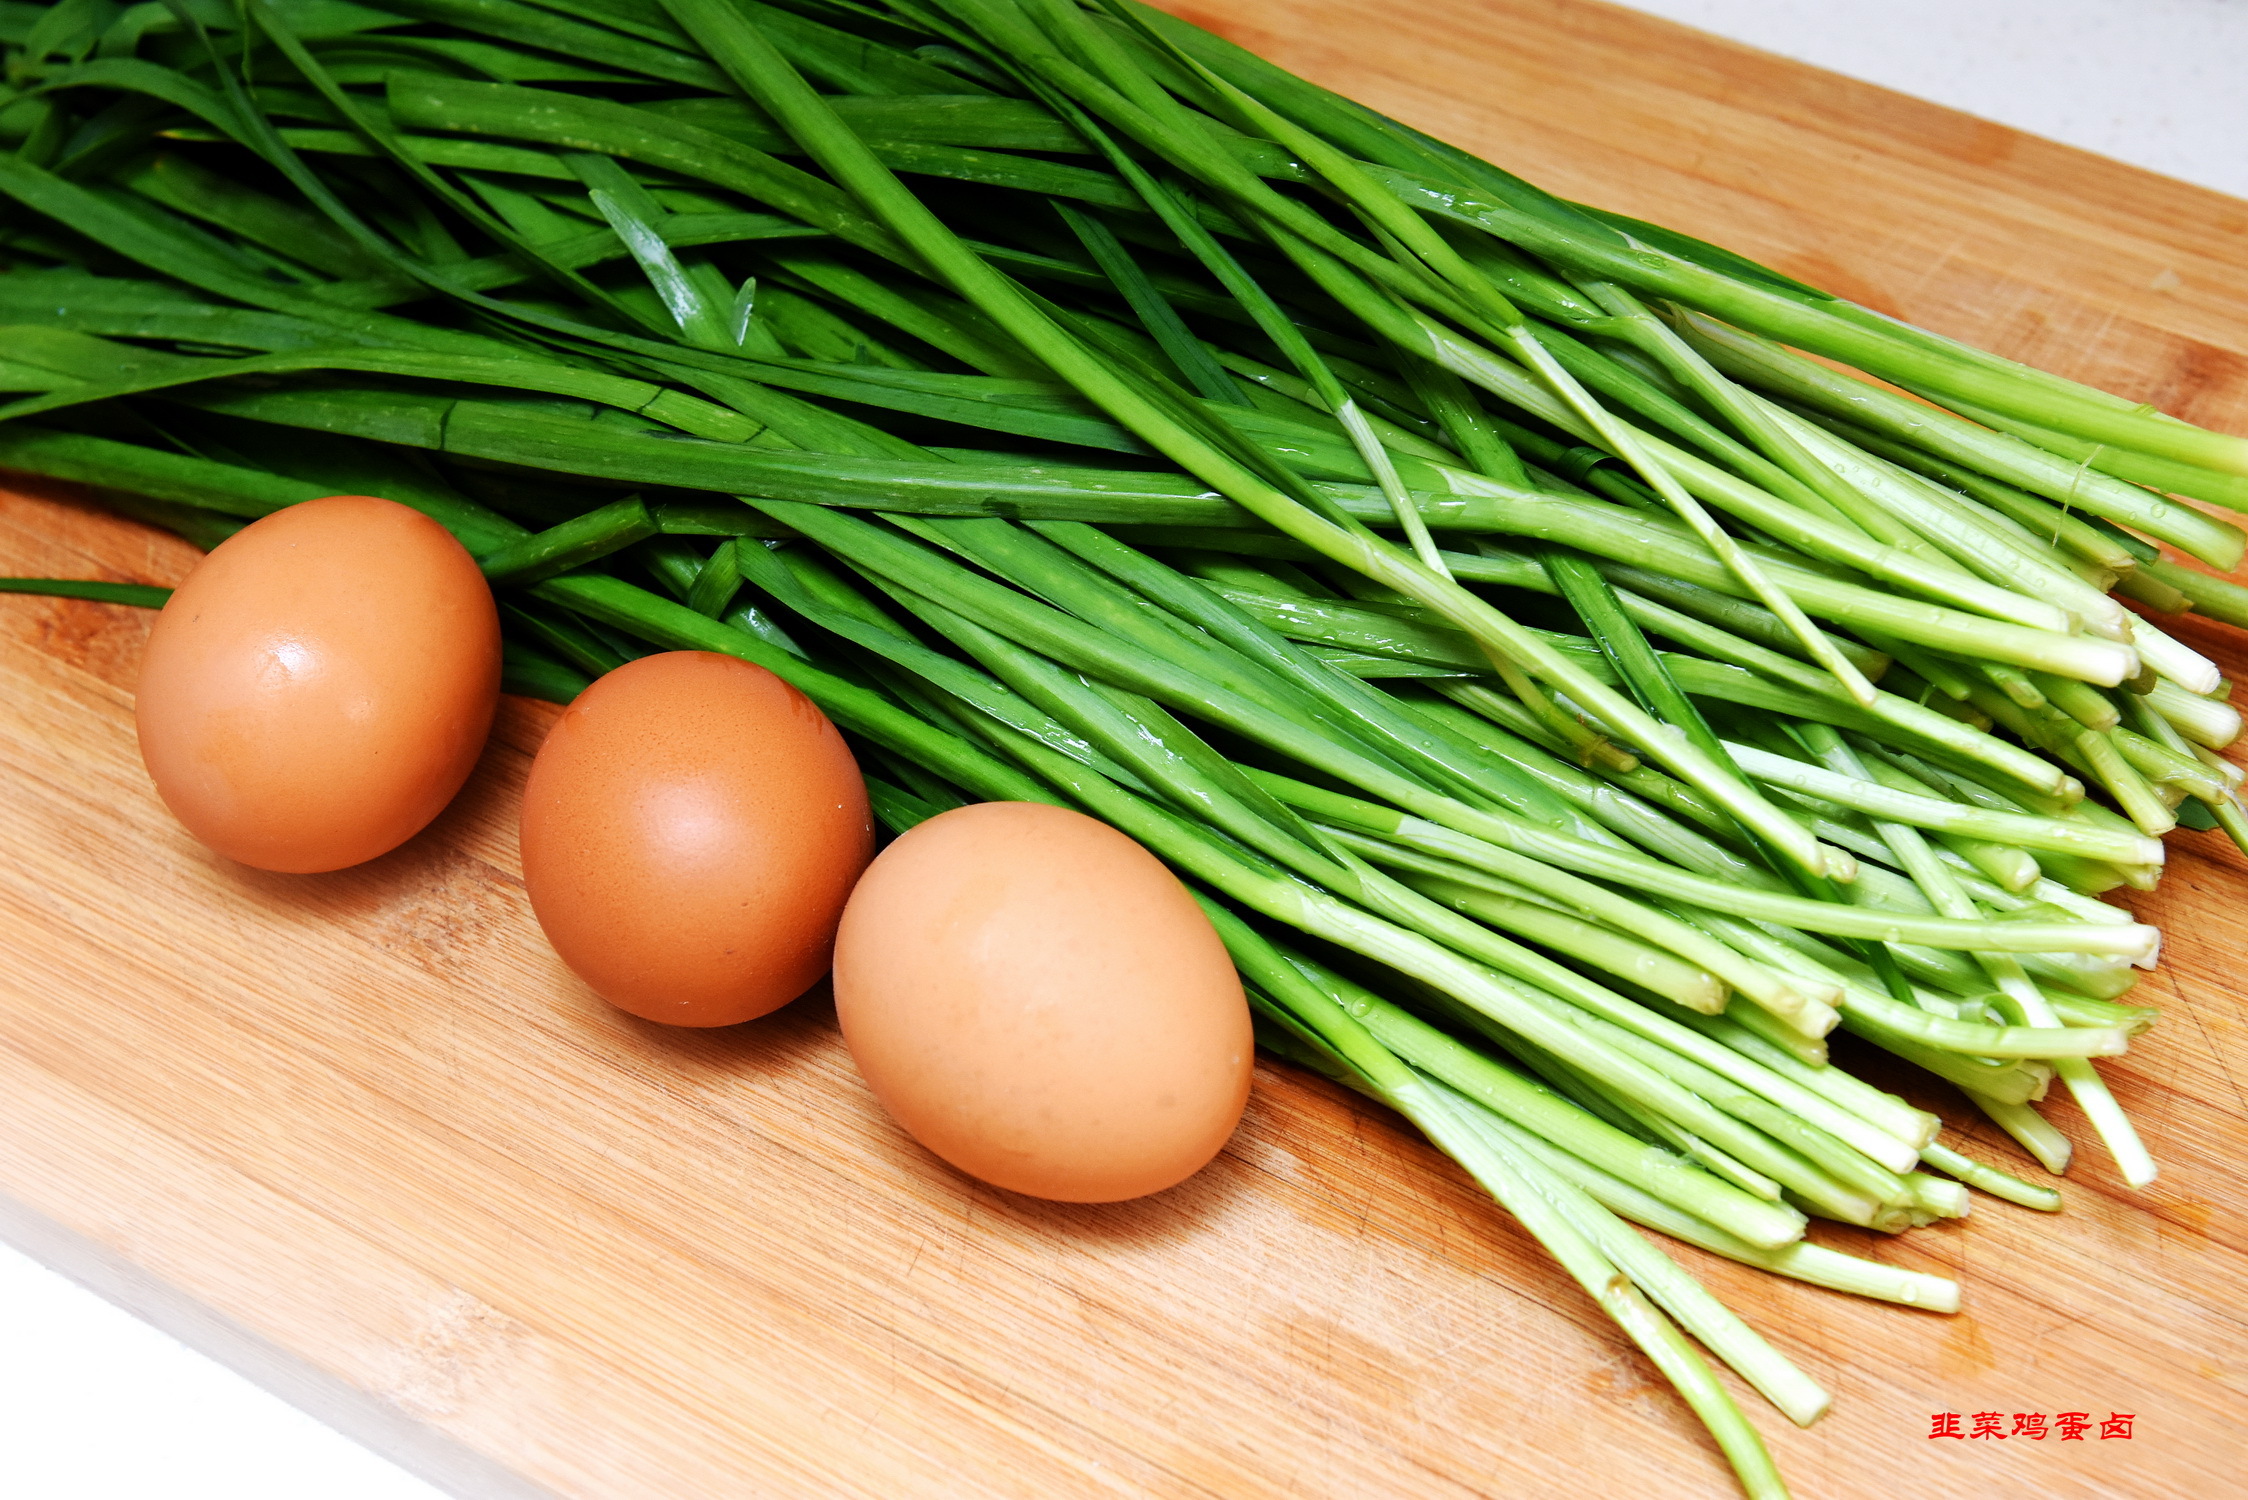 韭菜蚕豆炒鸡蛋,韭菜蚕豆炒鸡蛋的家常做法 - 美食杰韭菜蚕豆炒鸡蛋做法大全